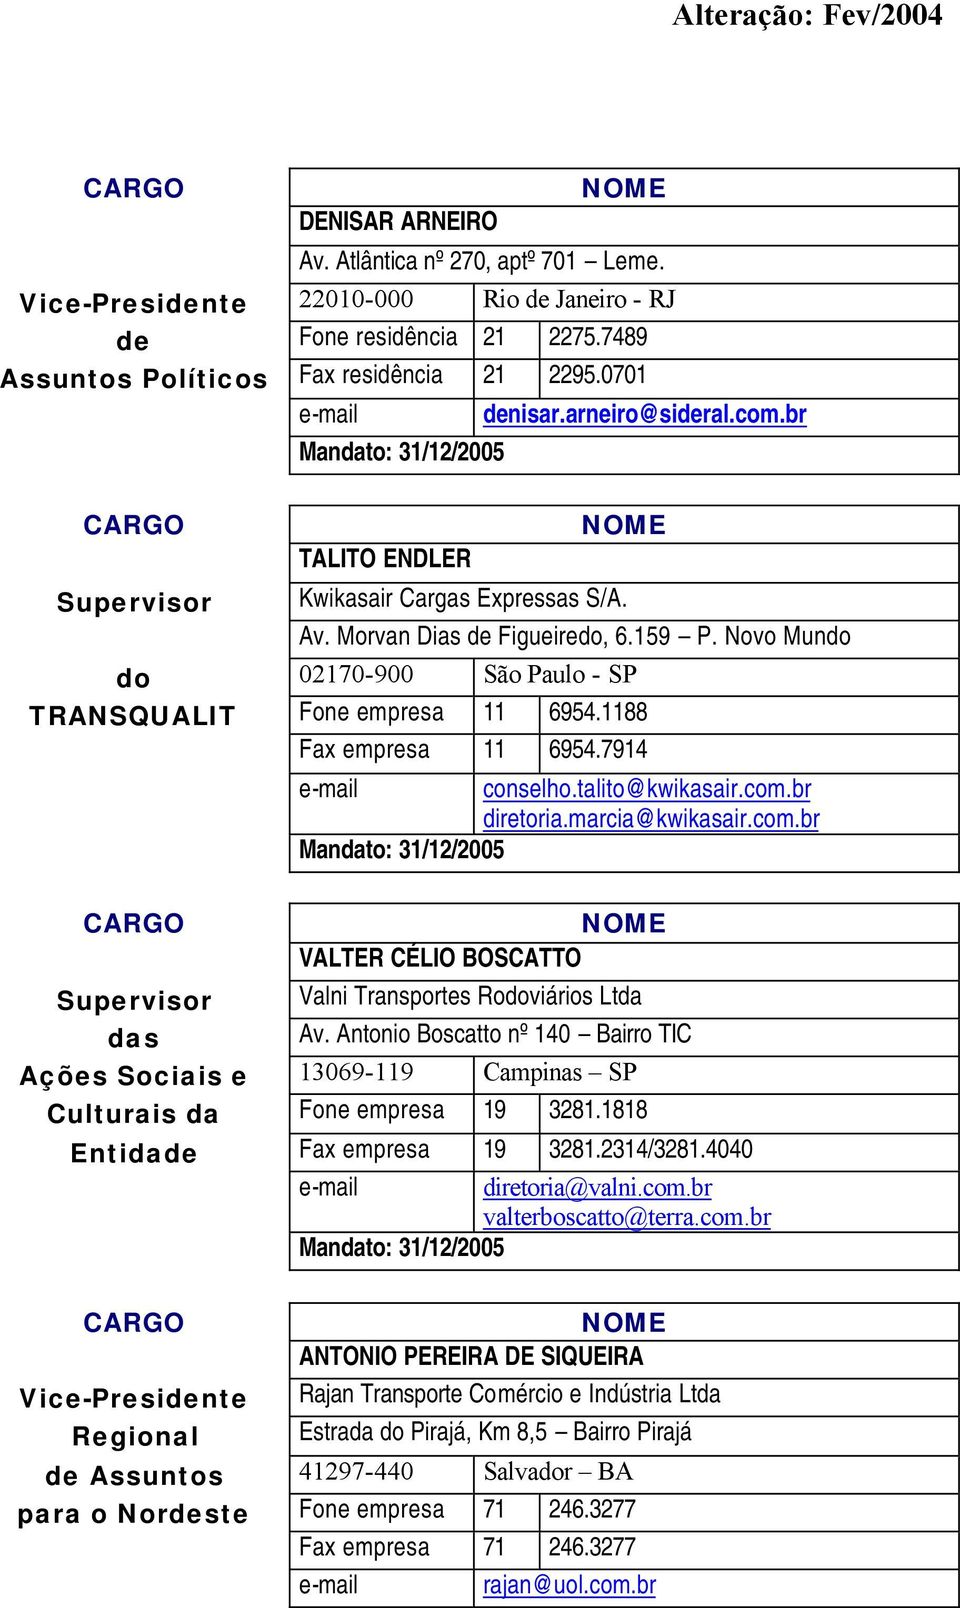 Novo Mundo do 02170-900 São Paulo - SP TRANSQUALIT Fone empresa 11 6954.1188 Fax empresa 11 6954.7914 e-mail conselho.talito@kwikasair.com.